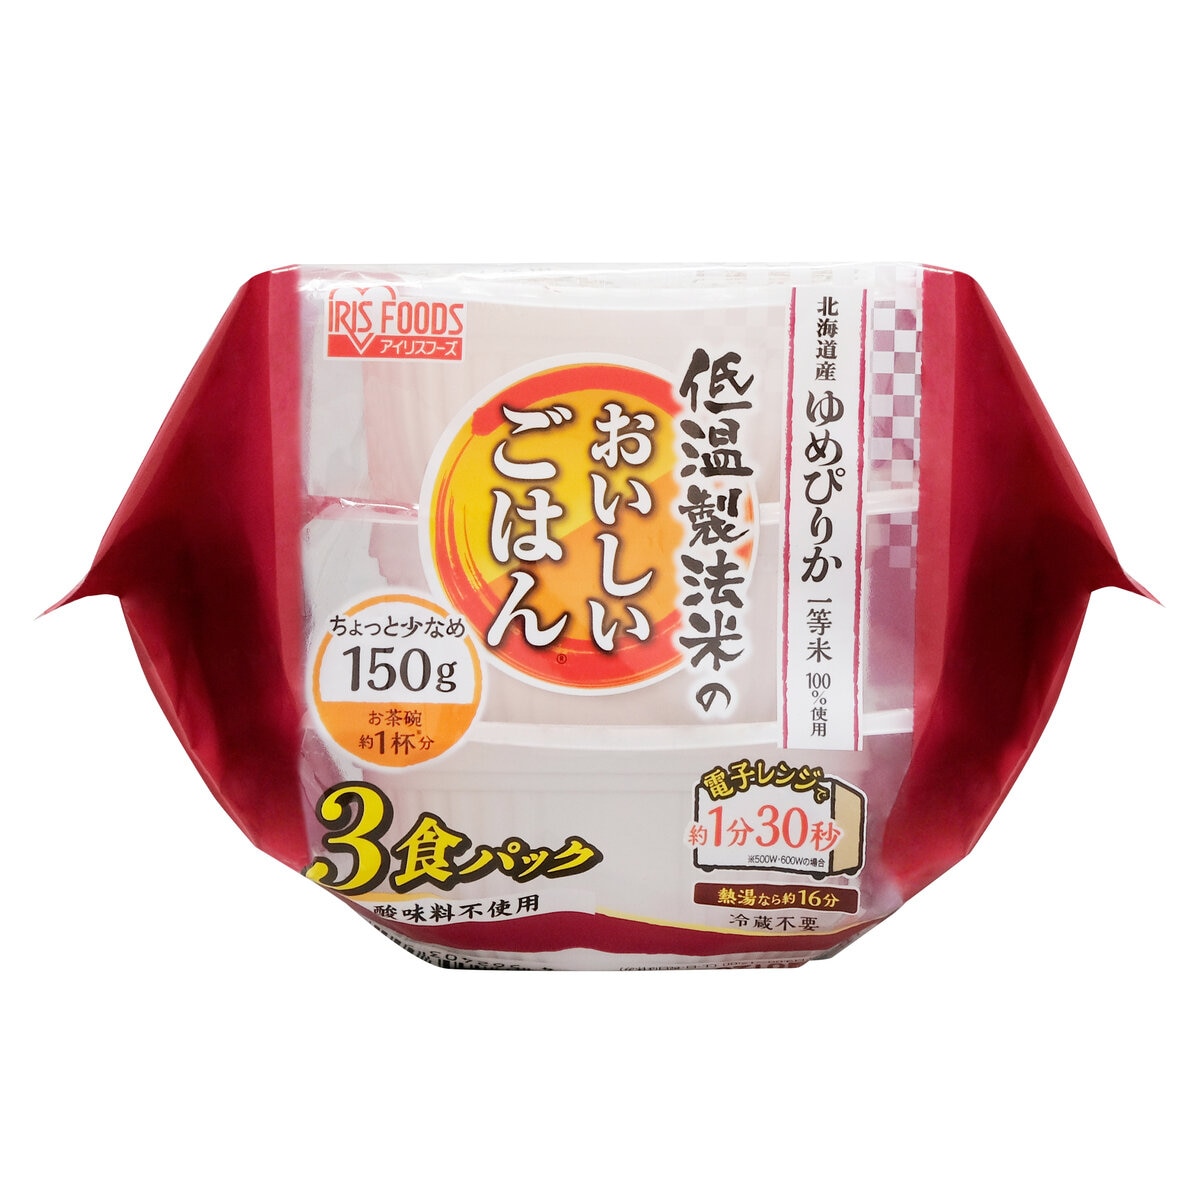 150g　Costco　低温製法ゆめぴりか　パックライス　24食　x　Japan